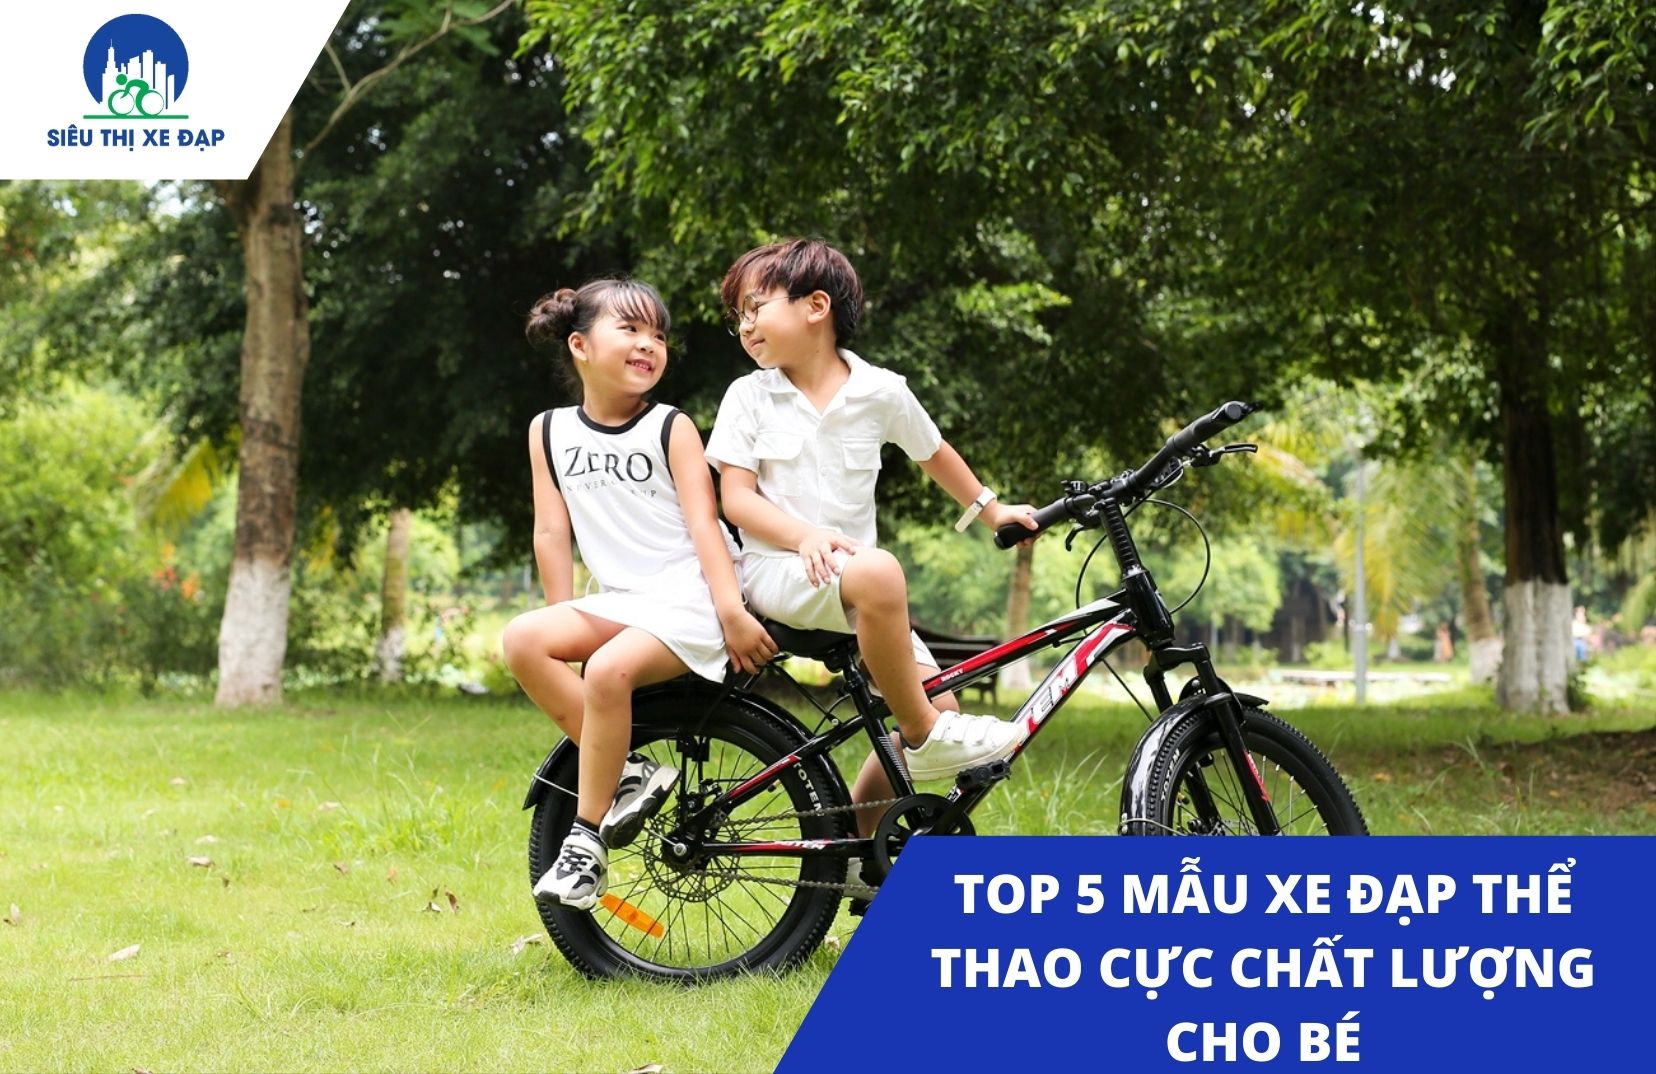 Top 5 mẫu xe đạp thể thao cho bé cực chất lượng